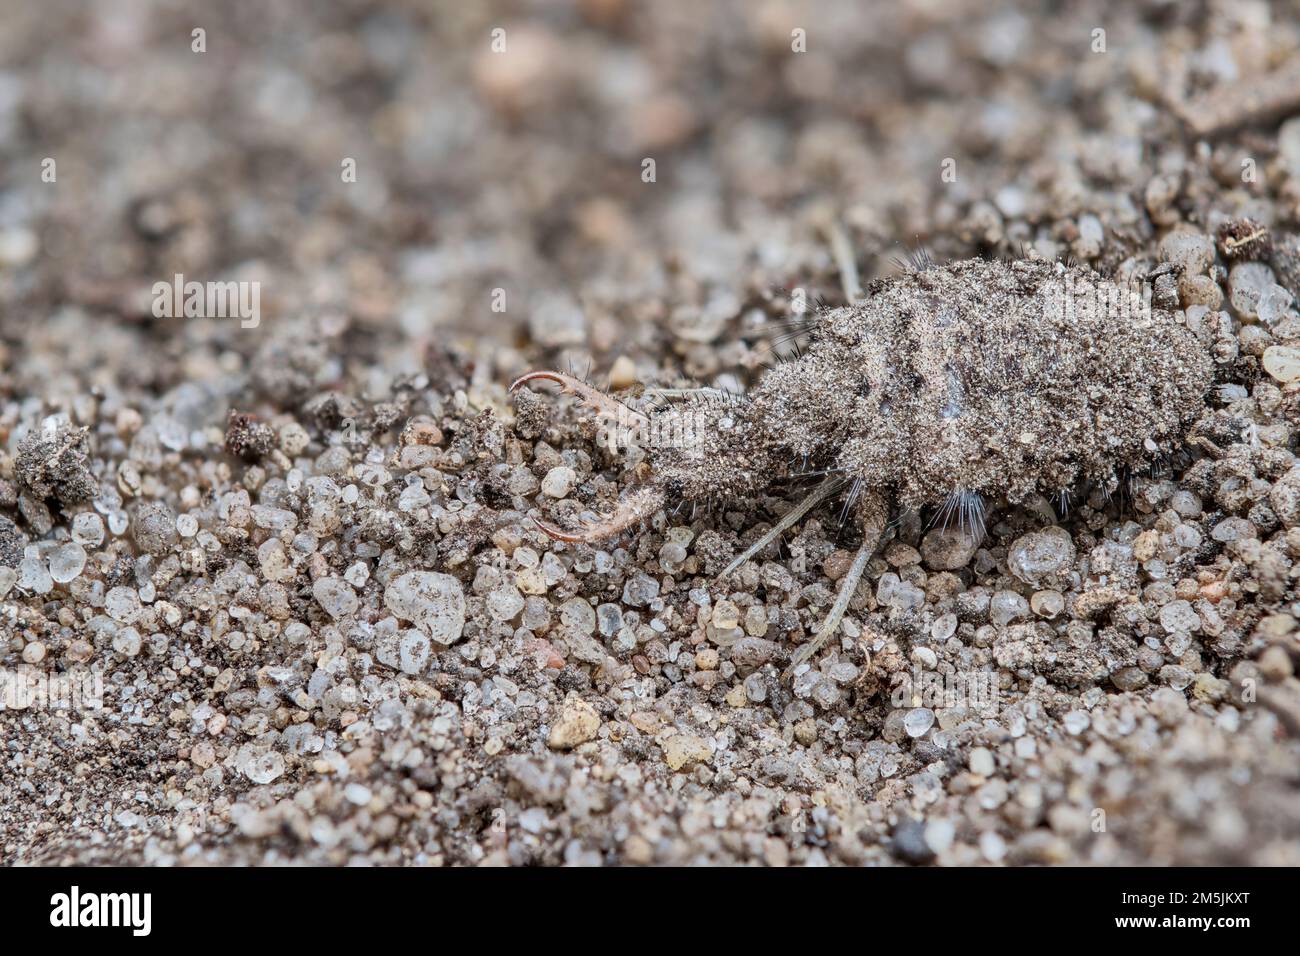 Geflecktflueglige Ameisenjungfer Larve - Ameisenloewe, Euroleon narines, Suffolk Antlion larva Banque D'Images